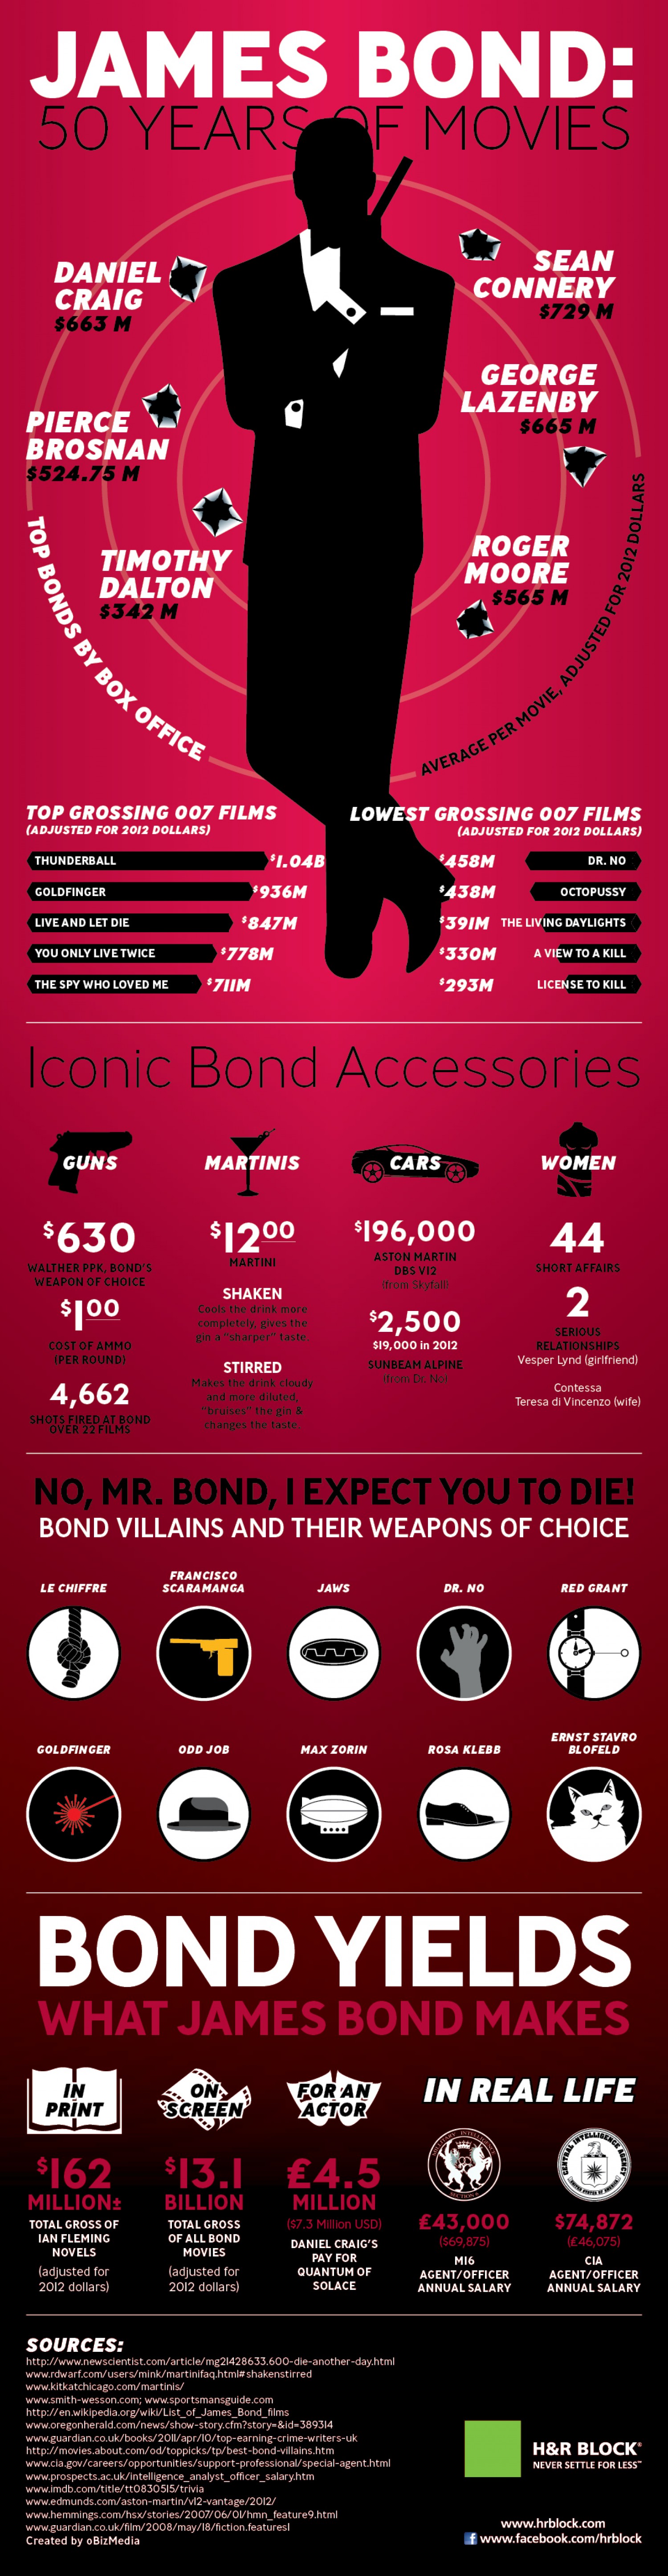 16. James bond 50 years movies